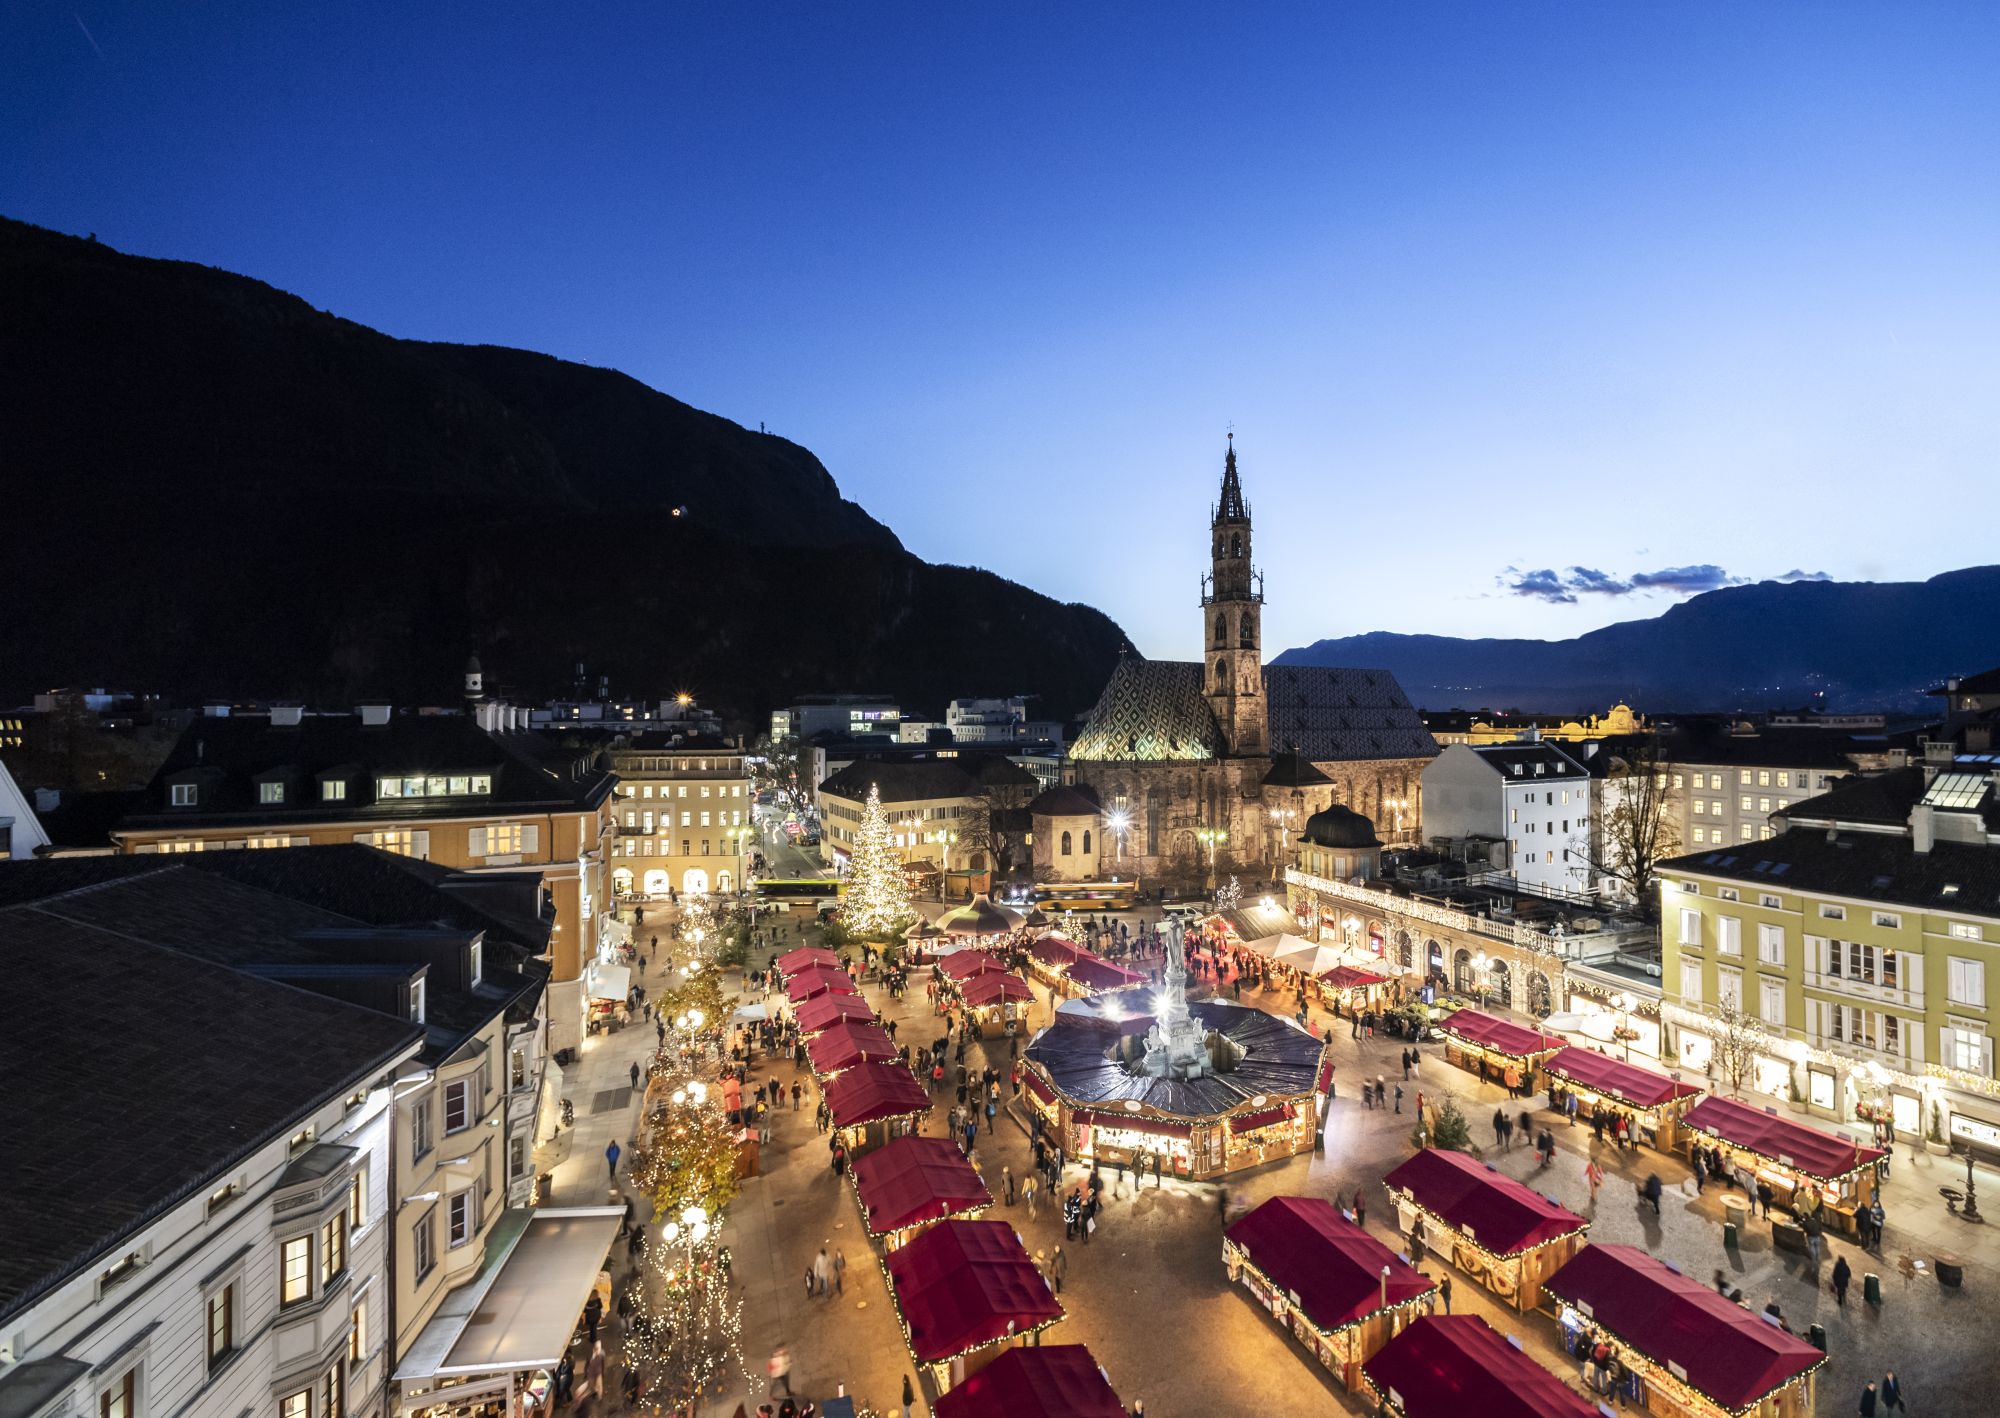 Bolzano Christmas markets traditions and wine Italia.it